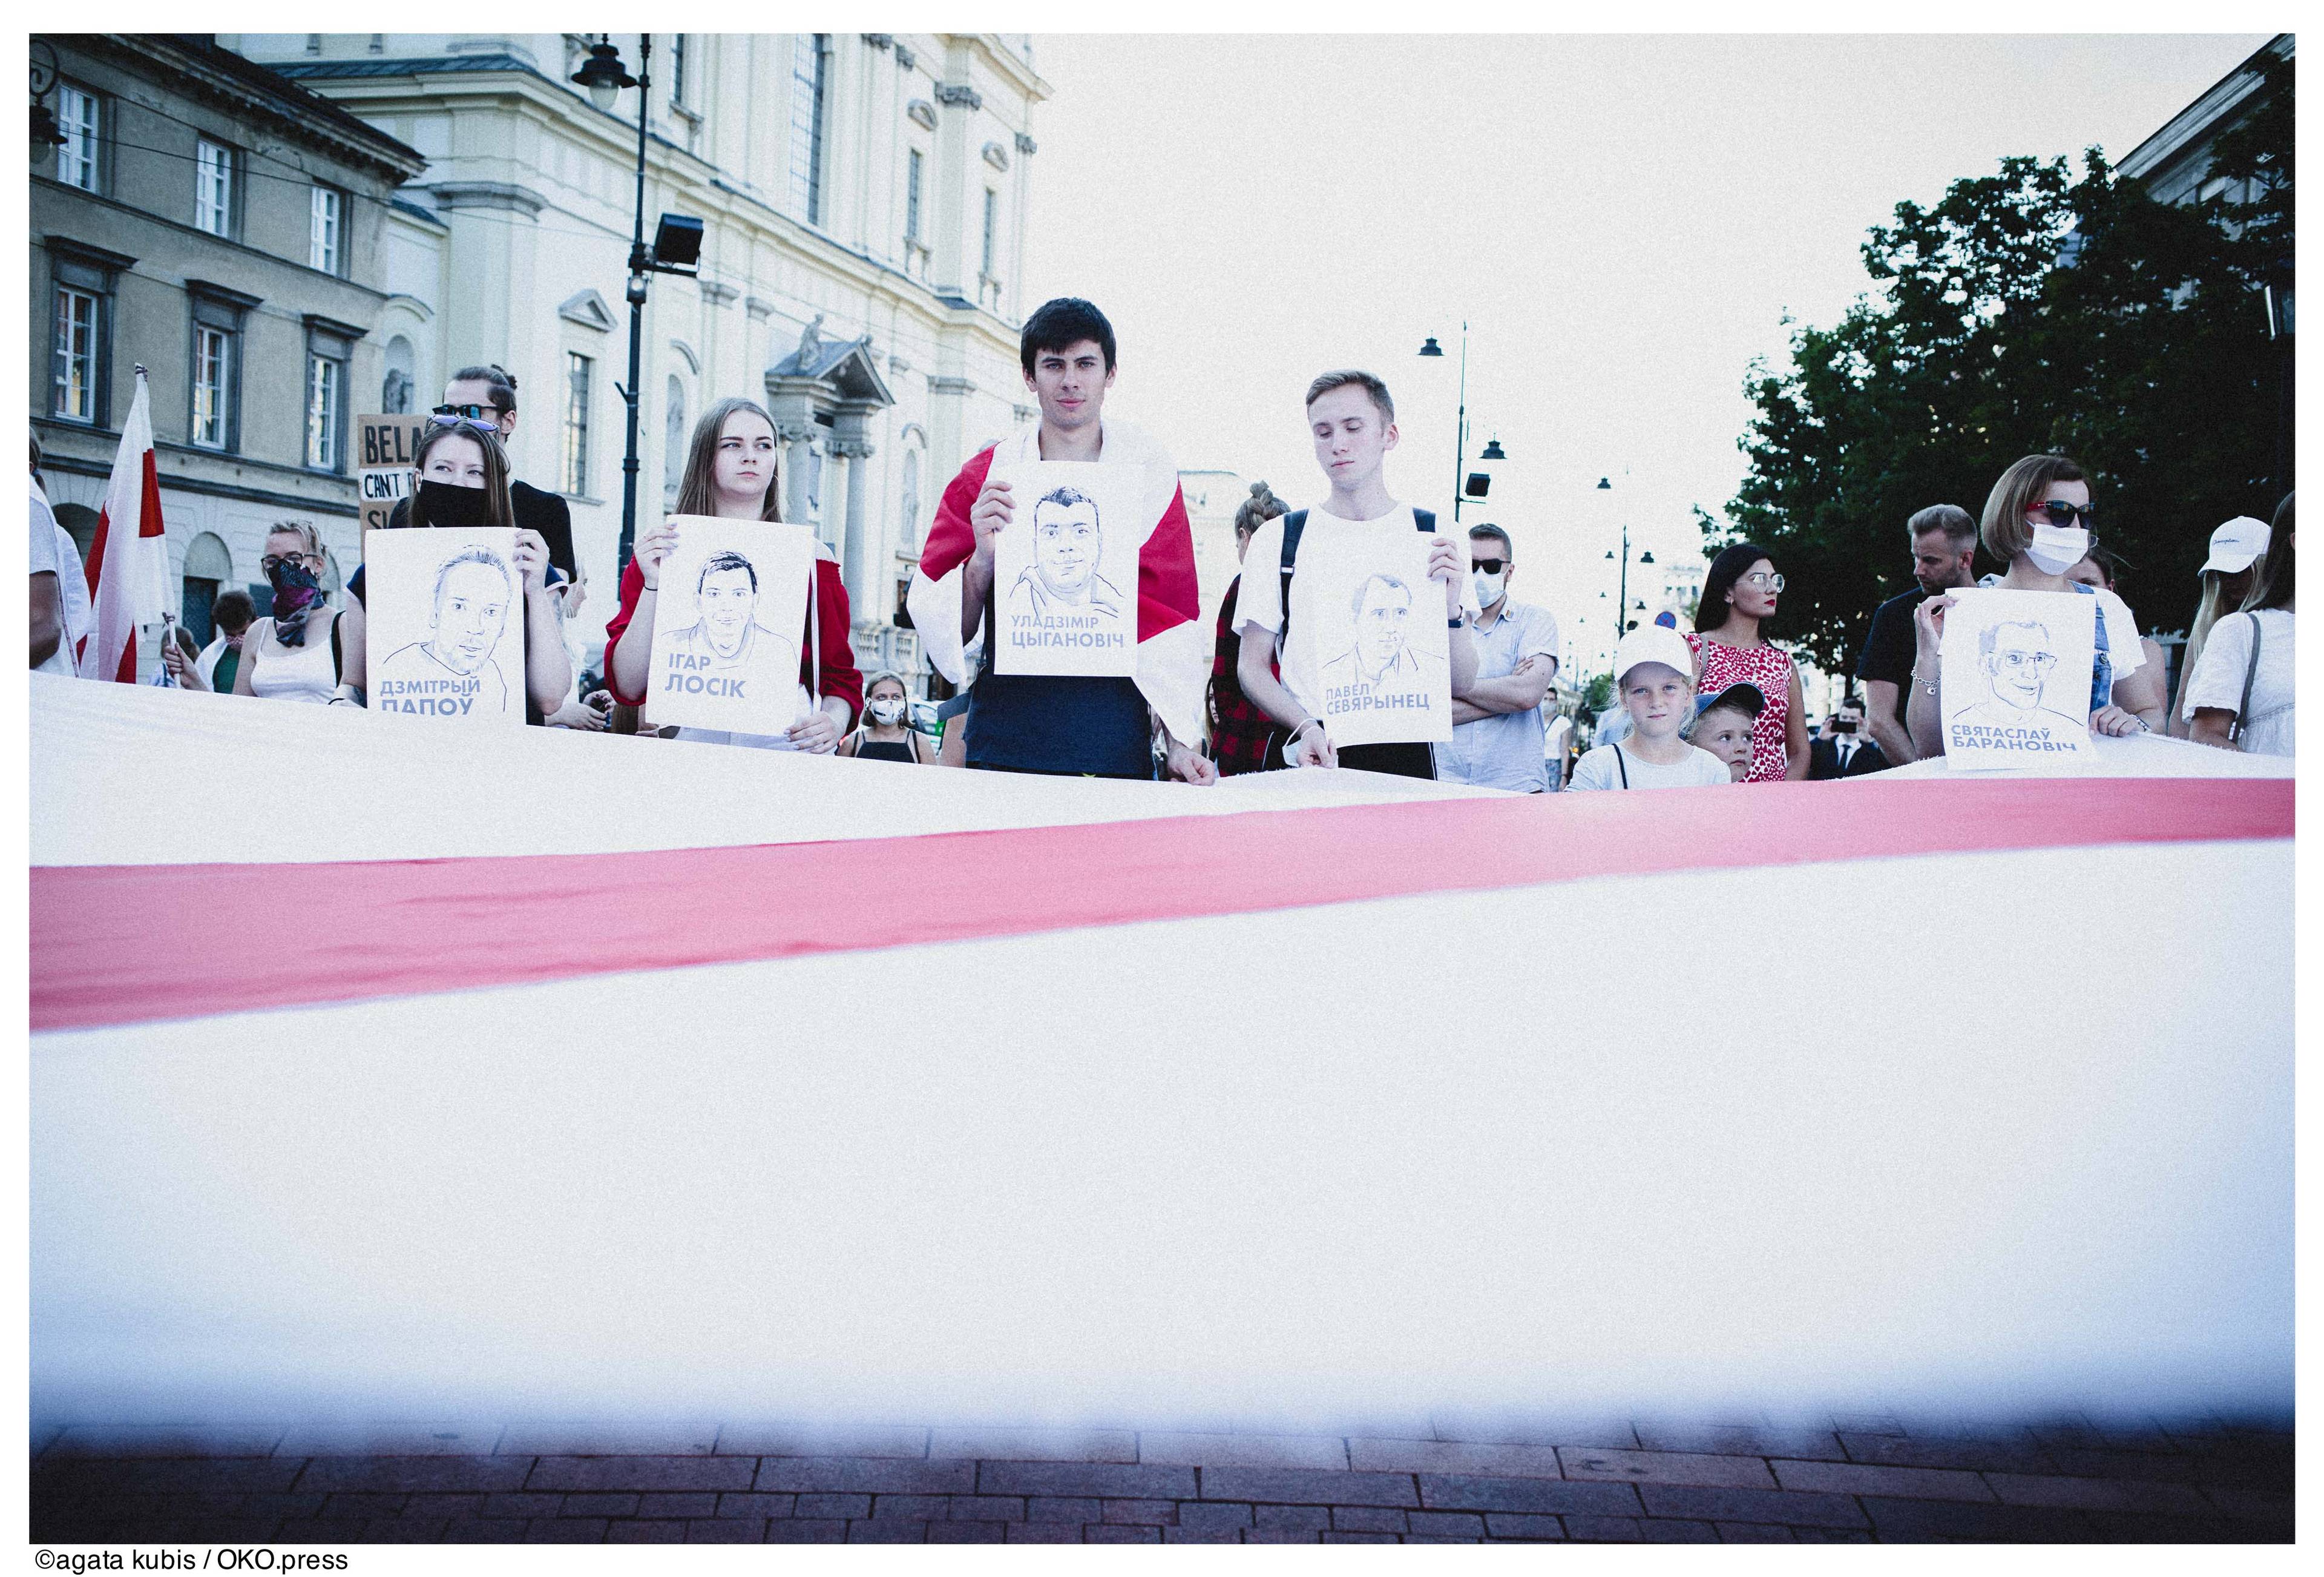 Warszawa, 10.08.2020. Demonstranci wyrazili solidarność z Białorusinkami i Białorusinami, których protesty przeciw sfałszowaniu wyborów są brutalnie tłumione przez OMON